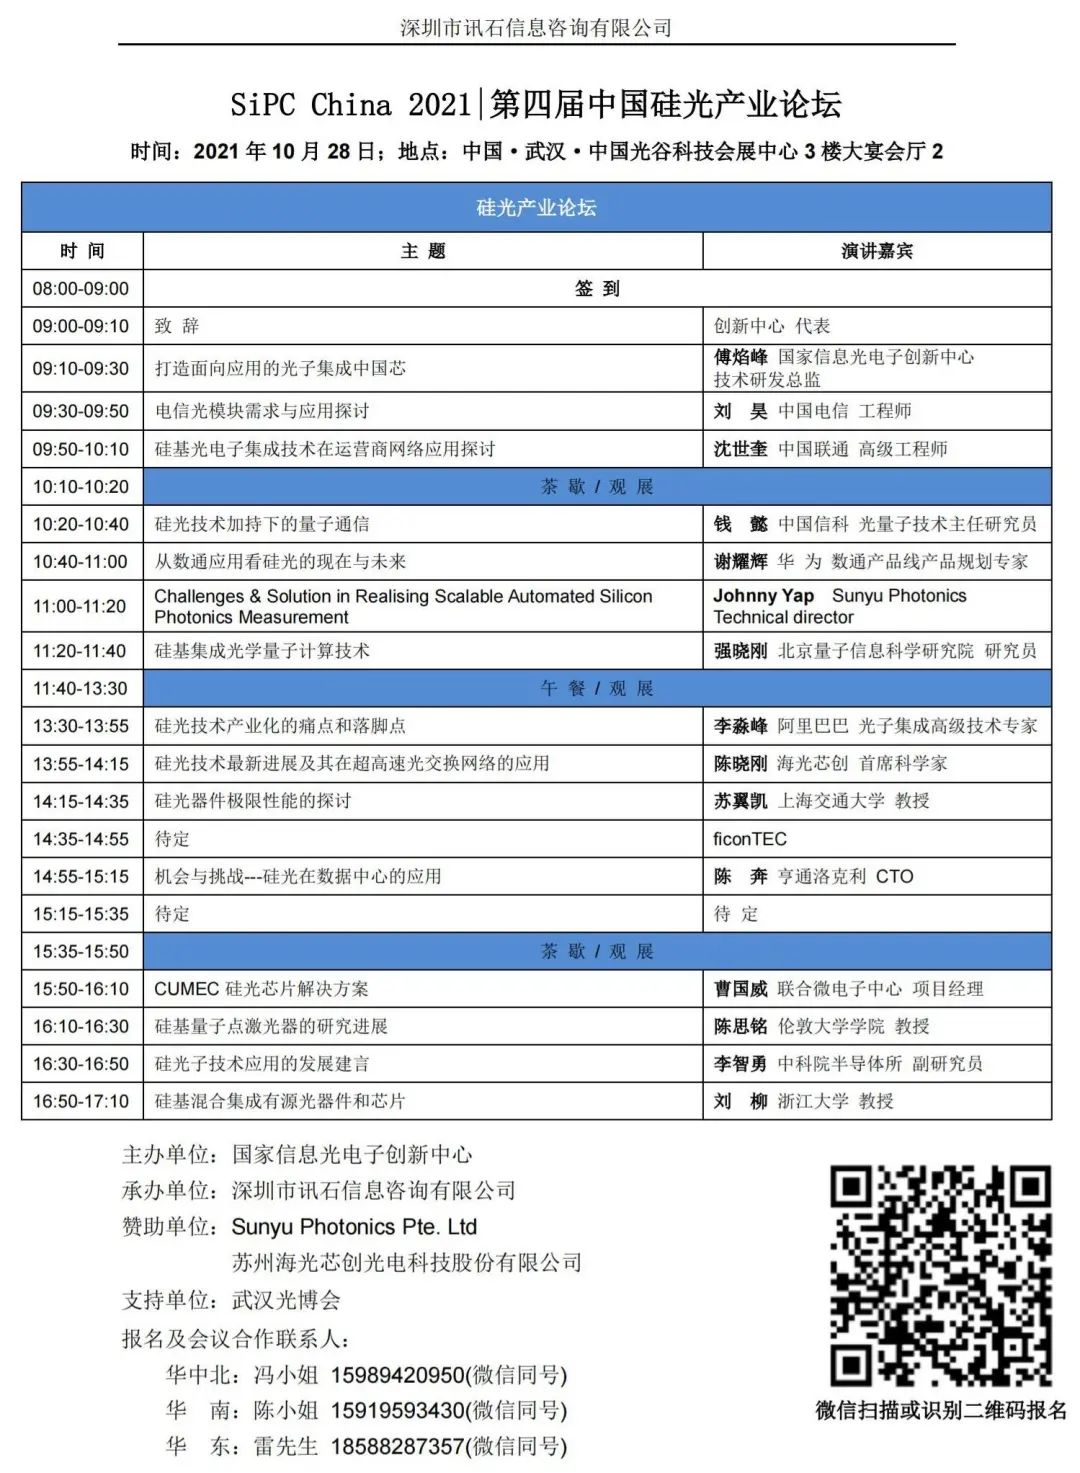 10月28日|第四届中国硅光产业论坛超强讲师阵容 欢迎关注